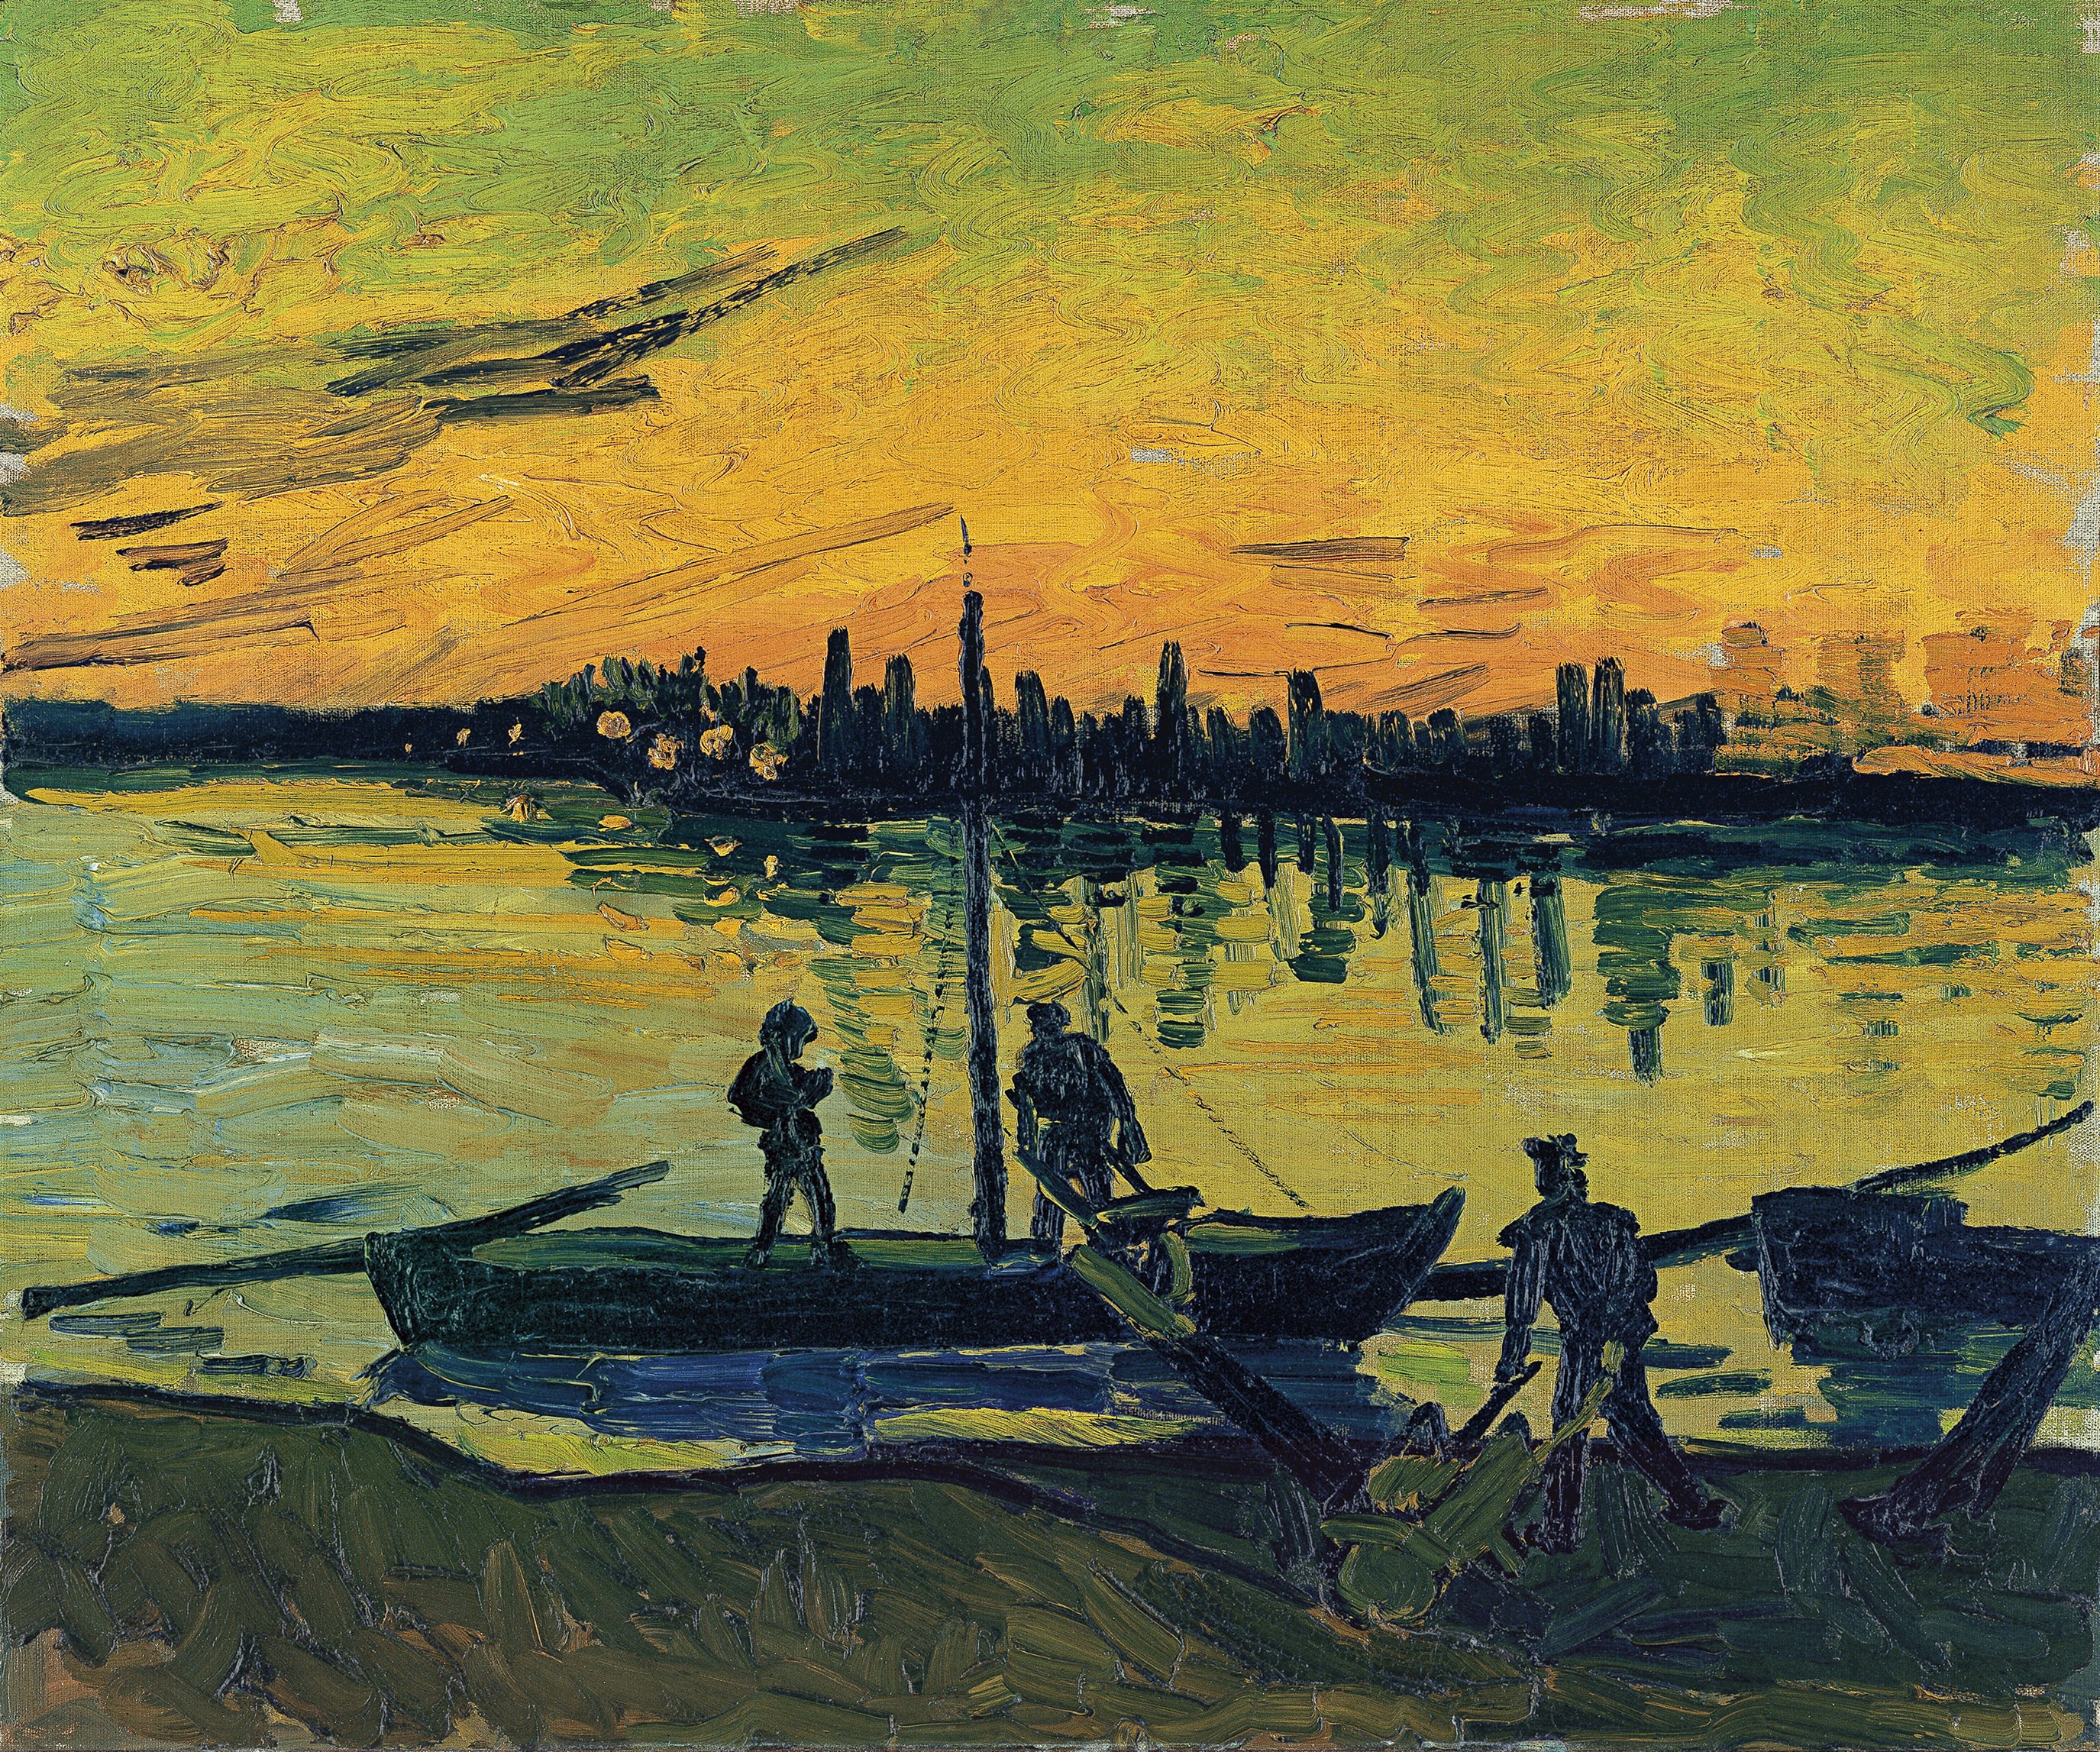 Az arles-i kikötőmunkások by Vincent van Gogh - 1888 - 54 x 65 cm 